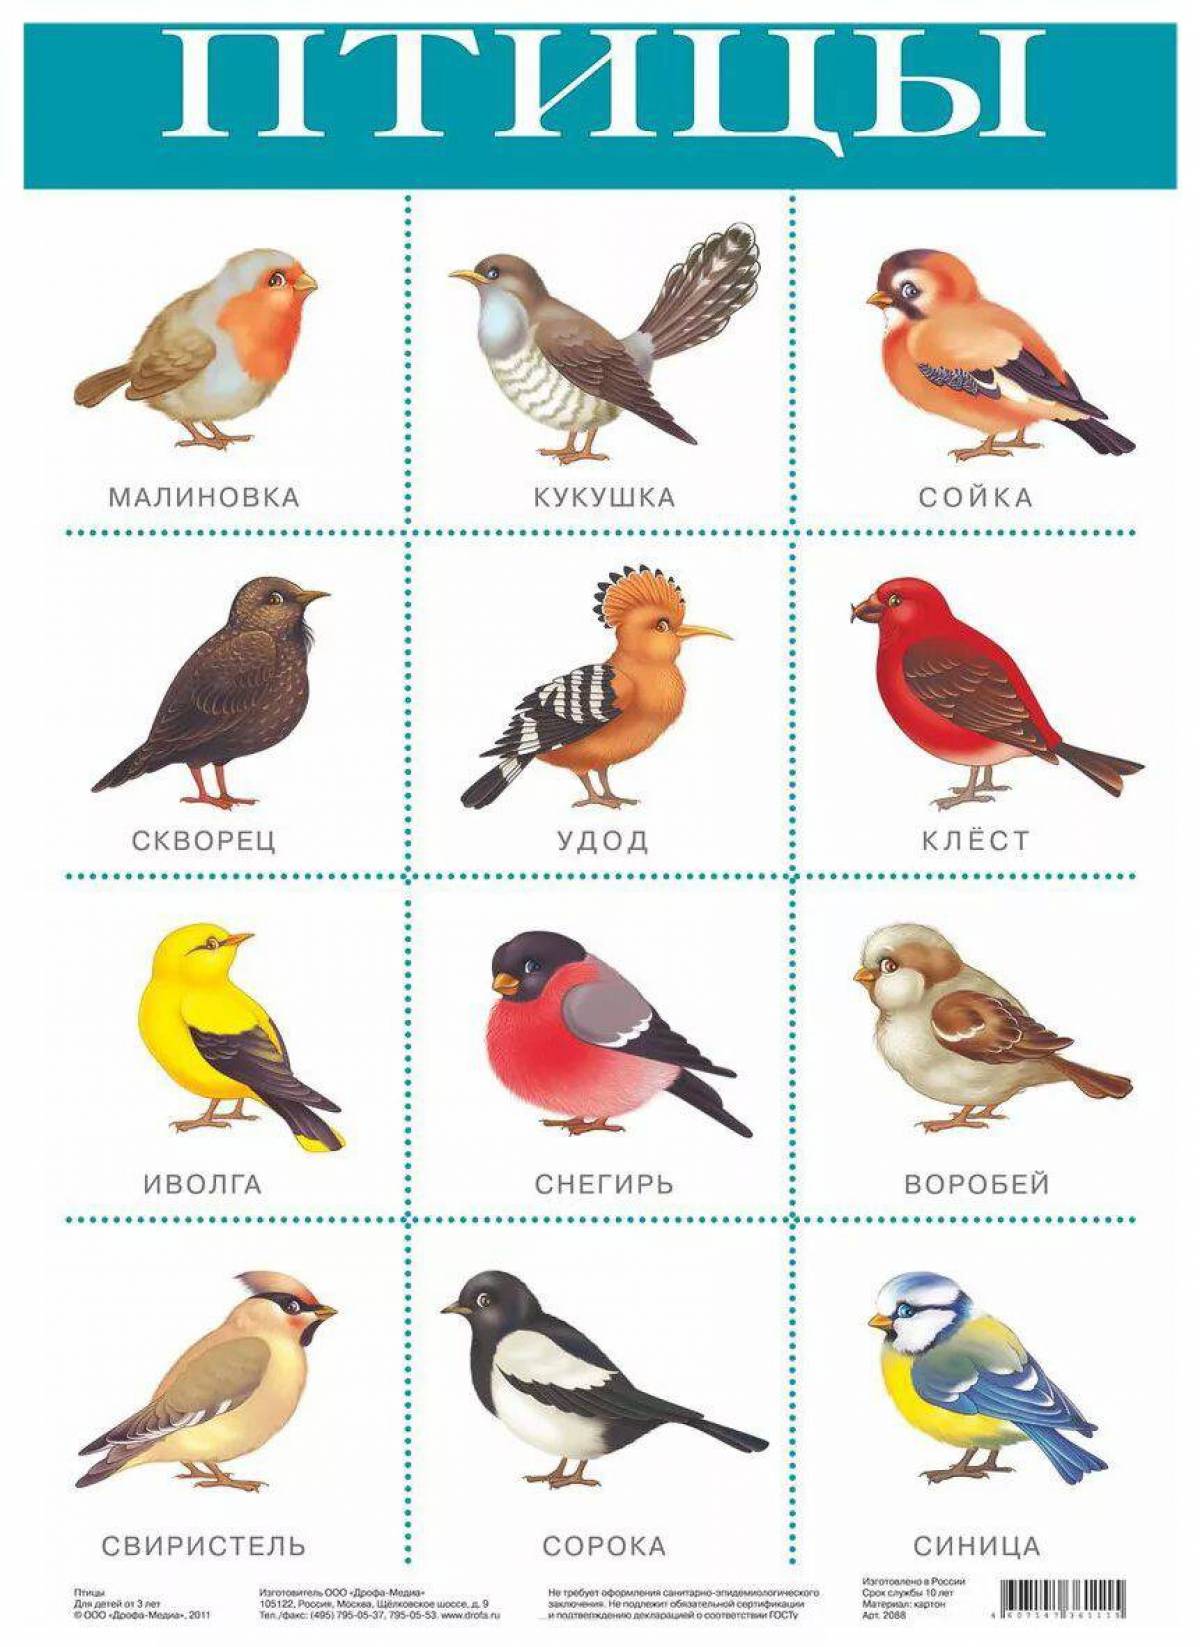 Картинки Птицы для детей 6 7 лет с названиями (39 шт.) - #5572